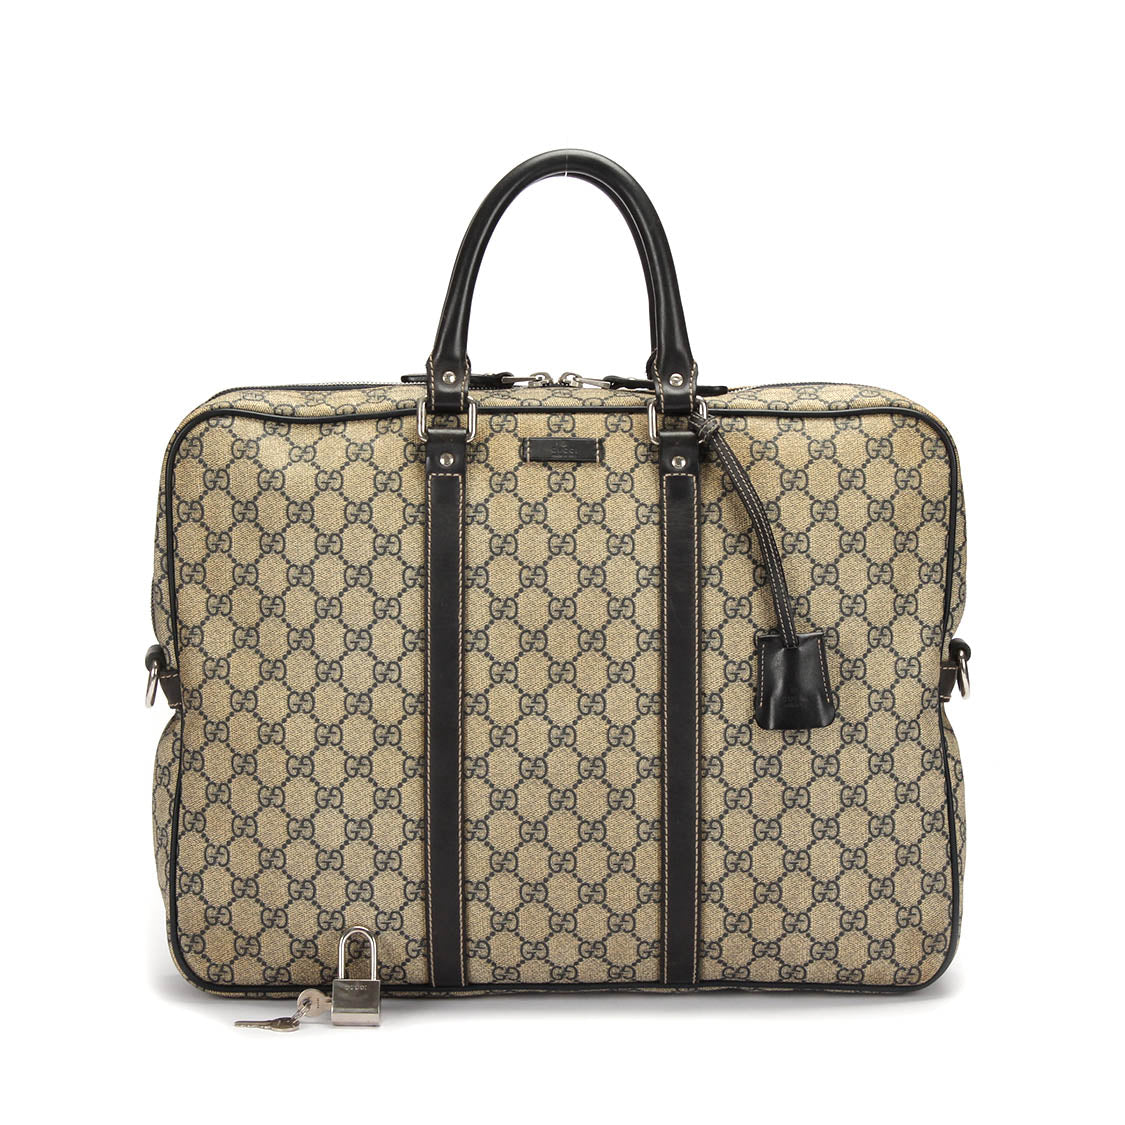 Gucci  Canvas Handbag in Good condition